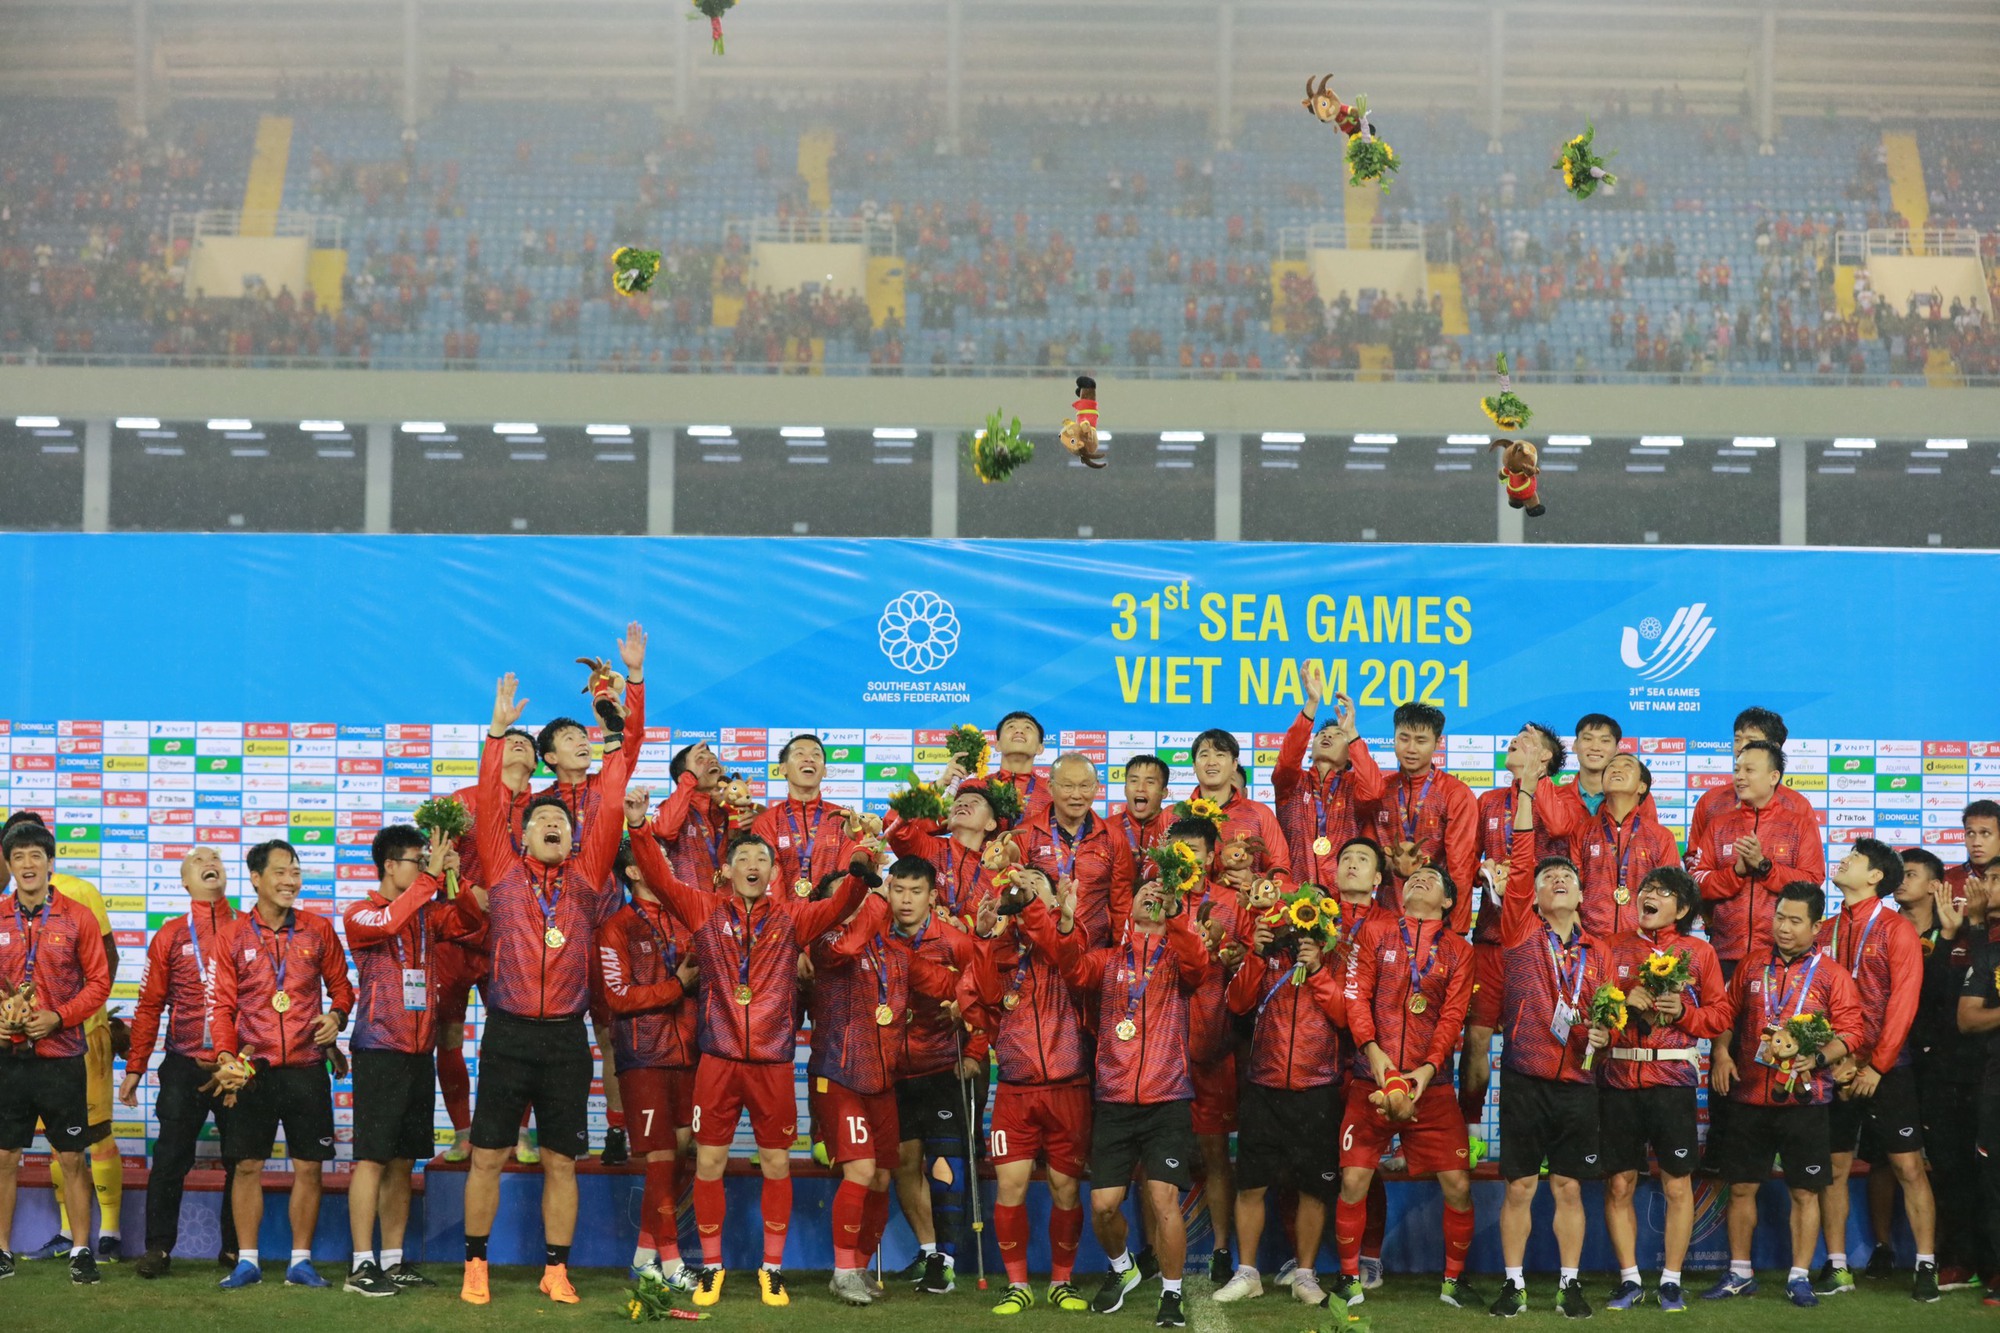 Cùng chúc mừng đội tuyển U23 Việt Nam với những hình ảnh đầy cảm xúc và ý nghĩa. Bộ sưu tập này sẽ mang lại niềm vui và cảm hứng cho bạn khi theo dõi những chàng trai của chúng ta trên hành trình vinh quang tại giải bóng đá U23 châu Á.